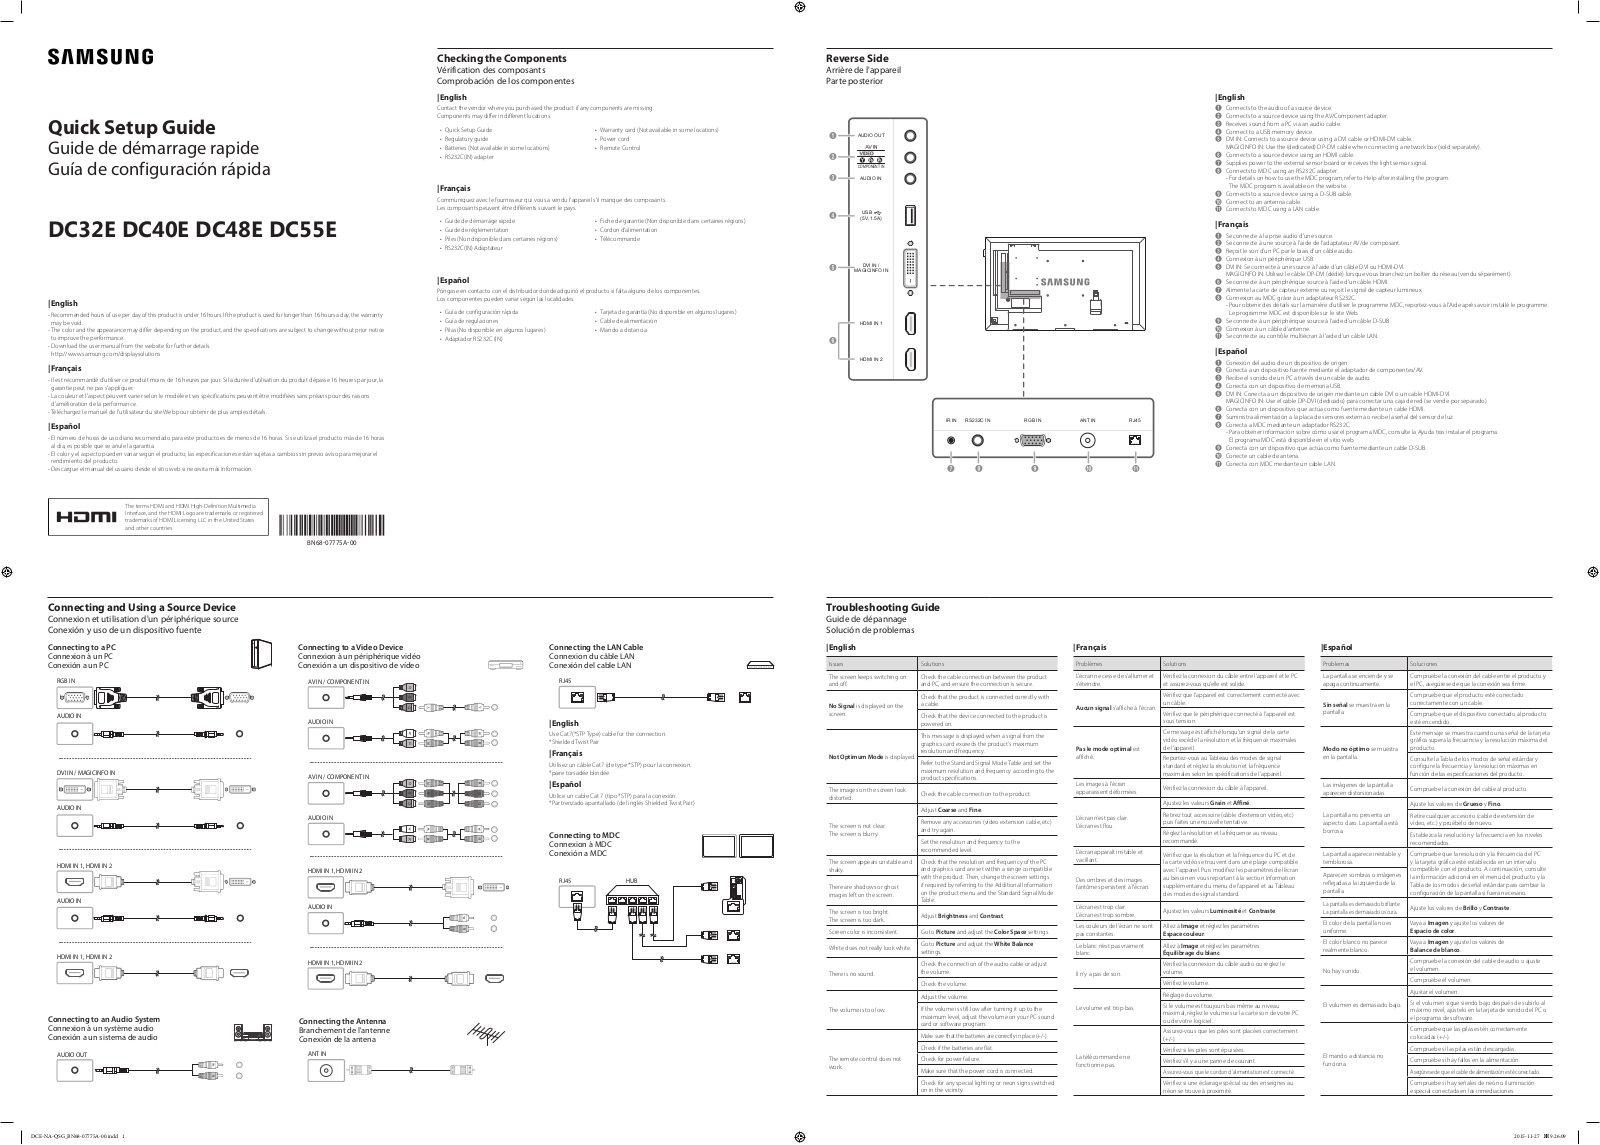 Samsung DC55E, DC48E, DC40E, DC32E User Manual